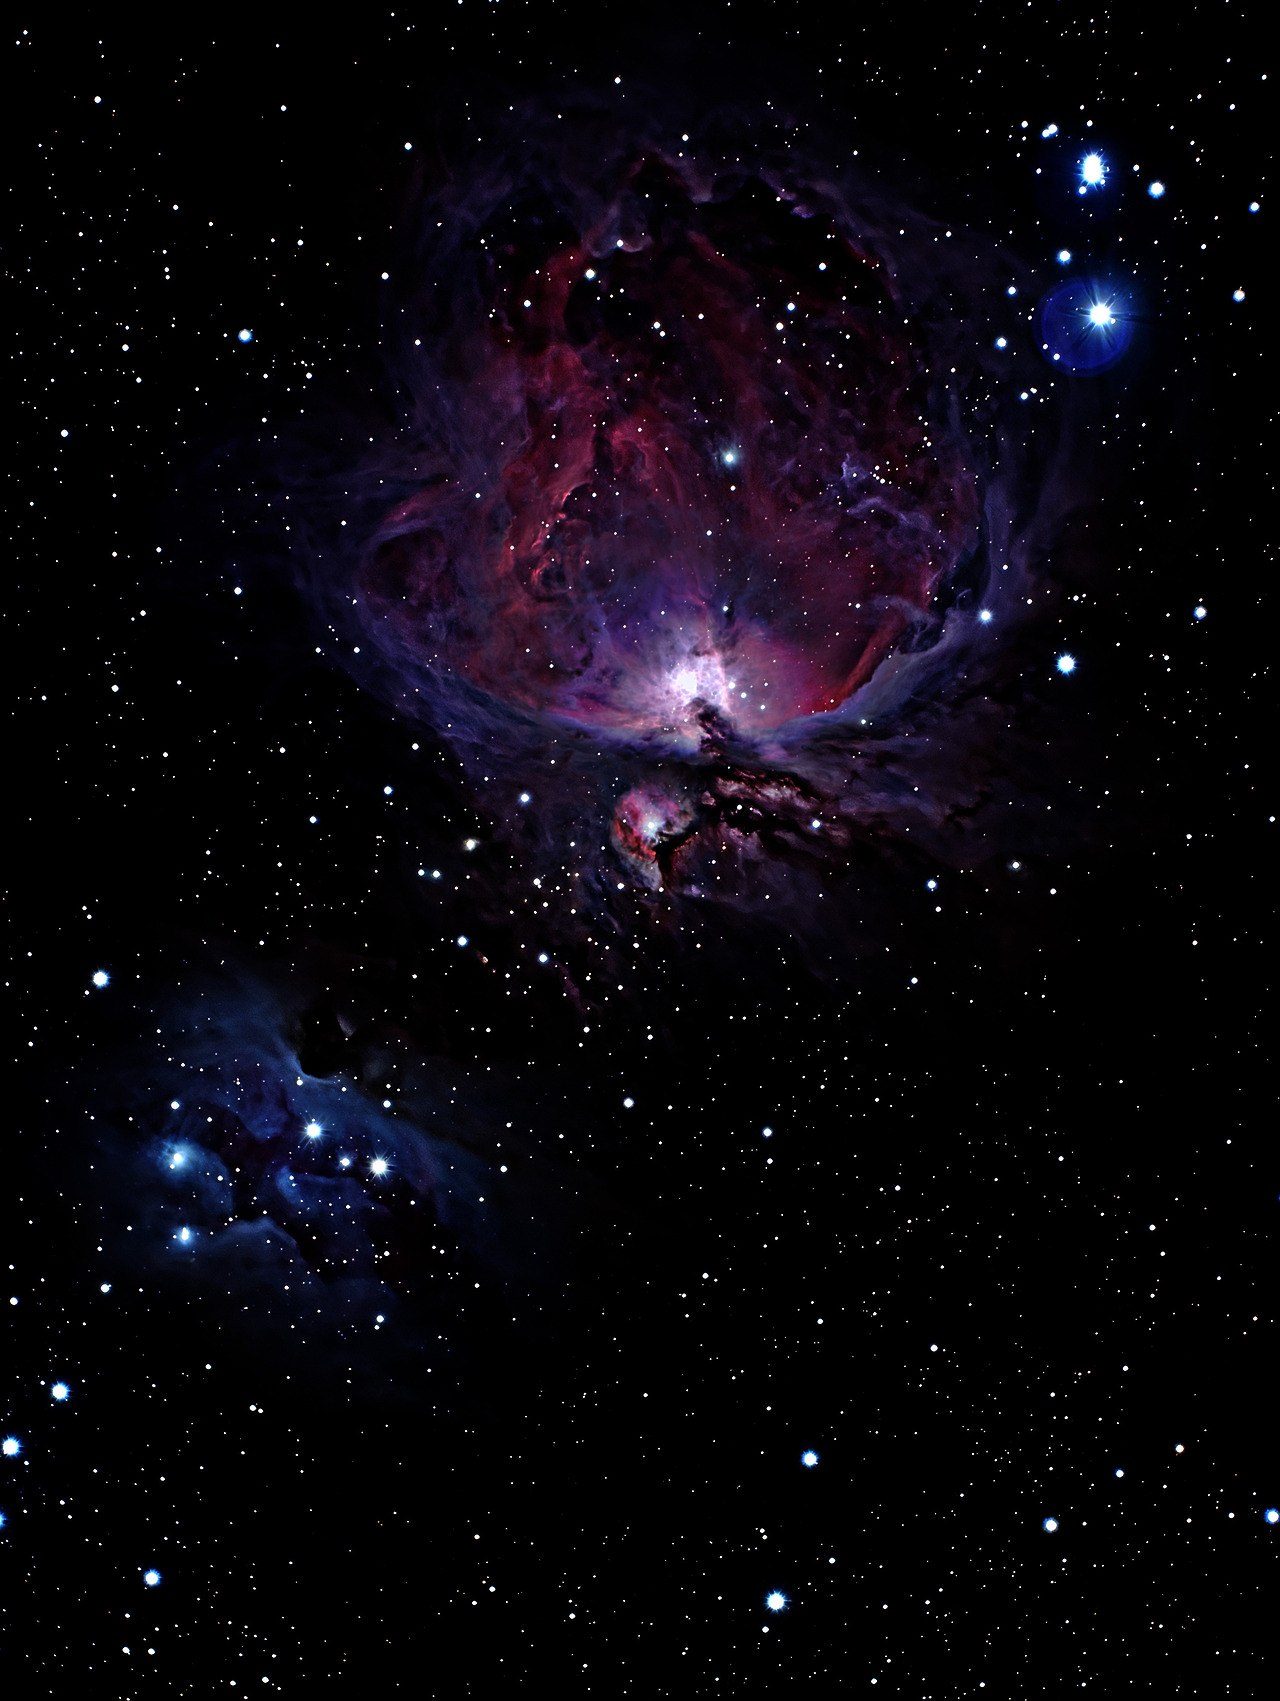 Image amateur de la nébuleuse d'Orion